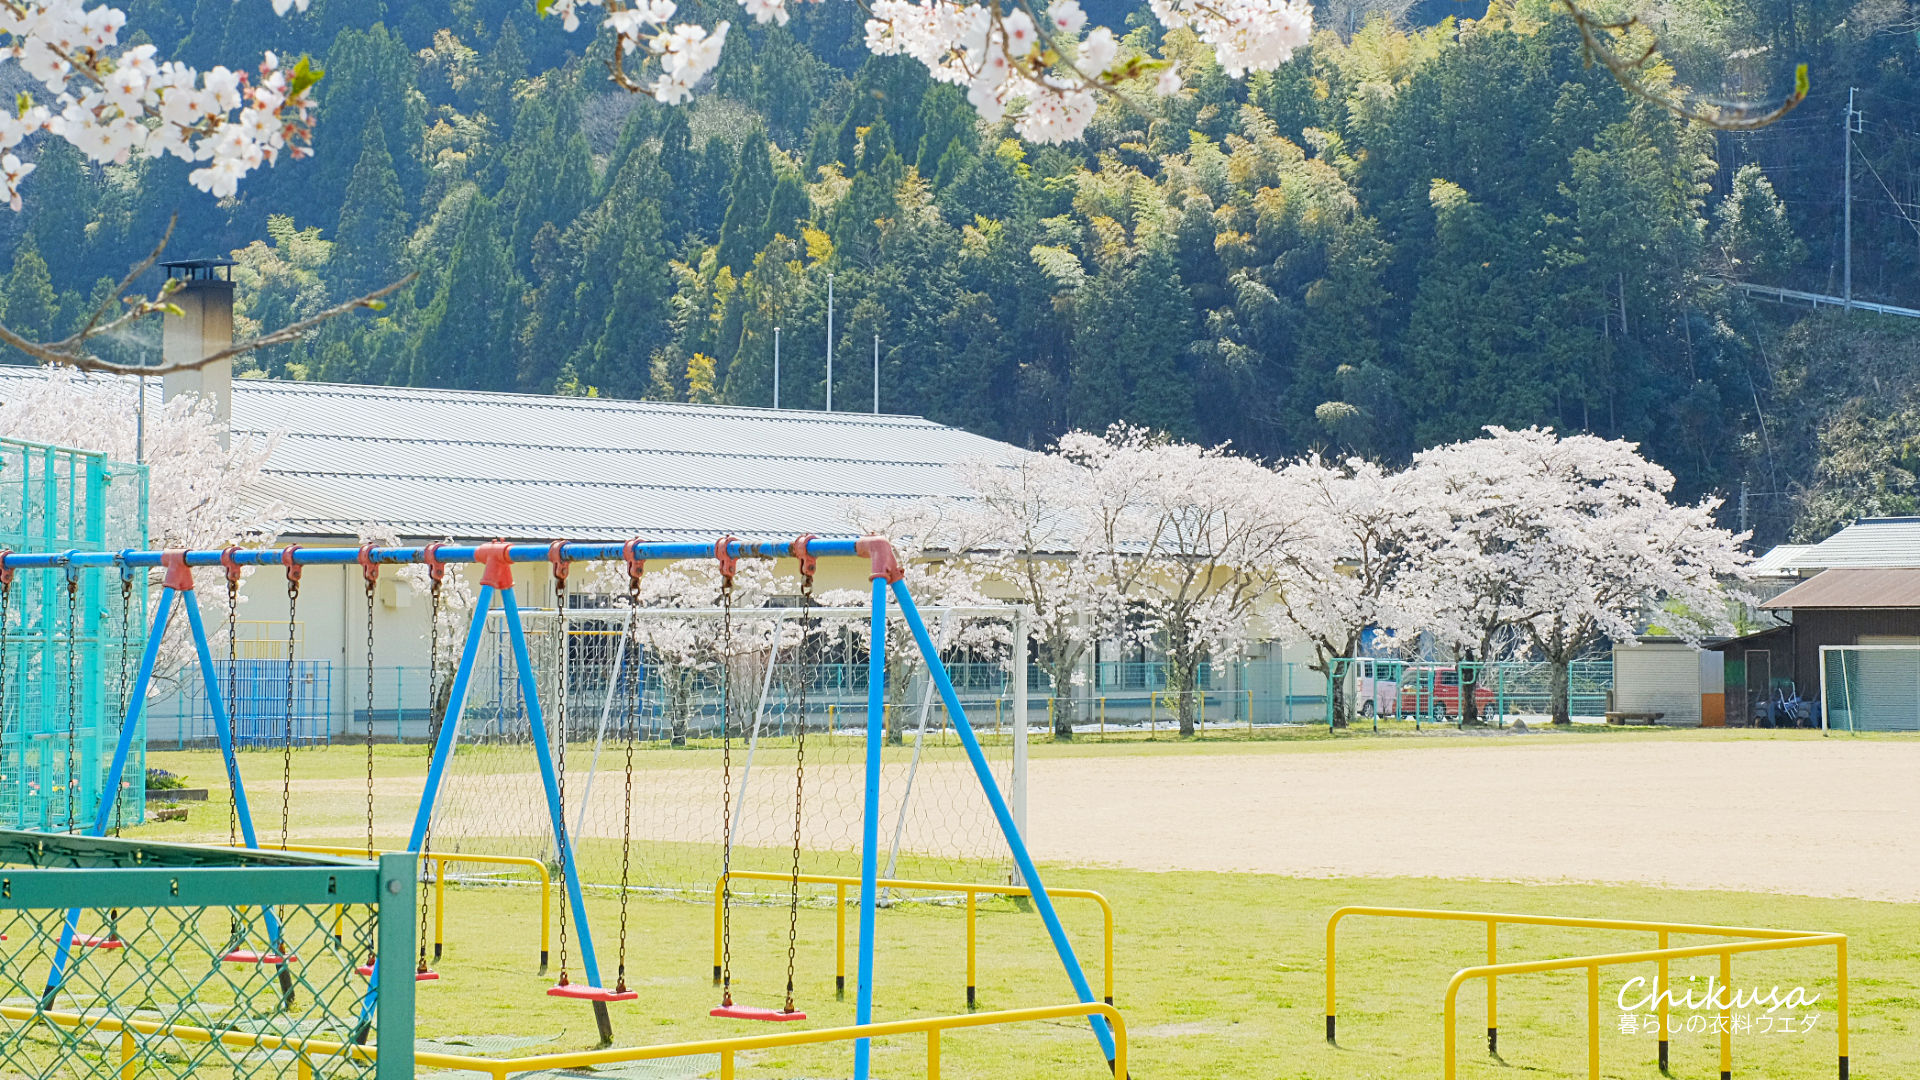 千種小学校の桜